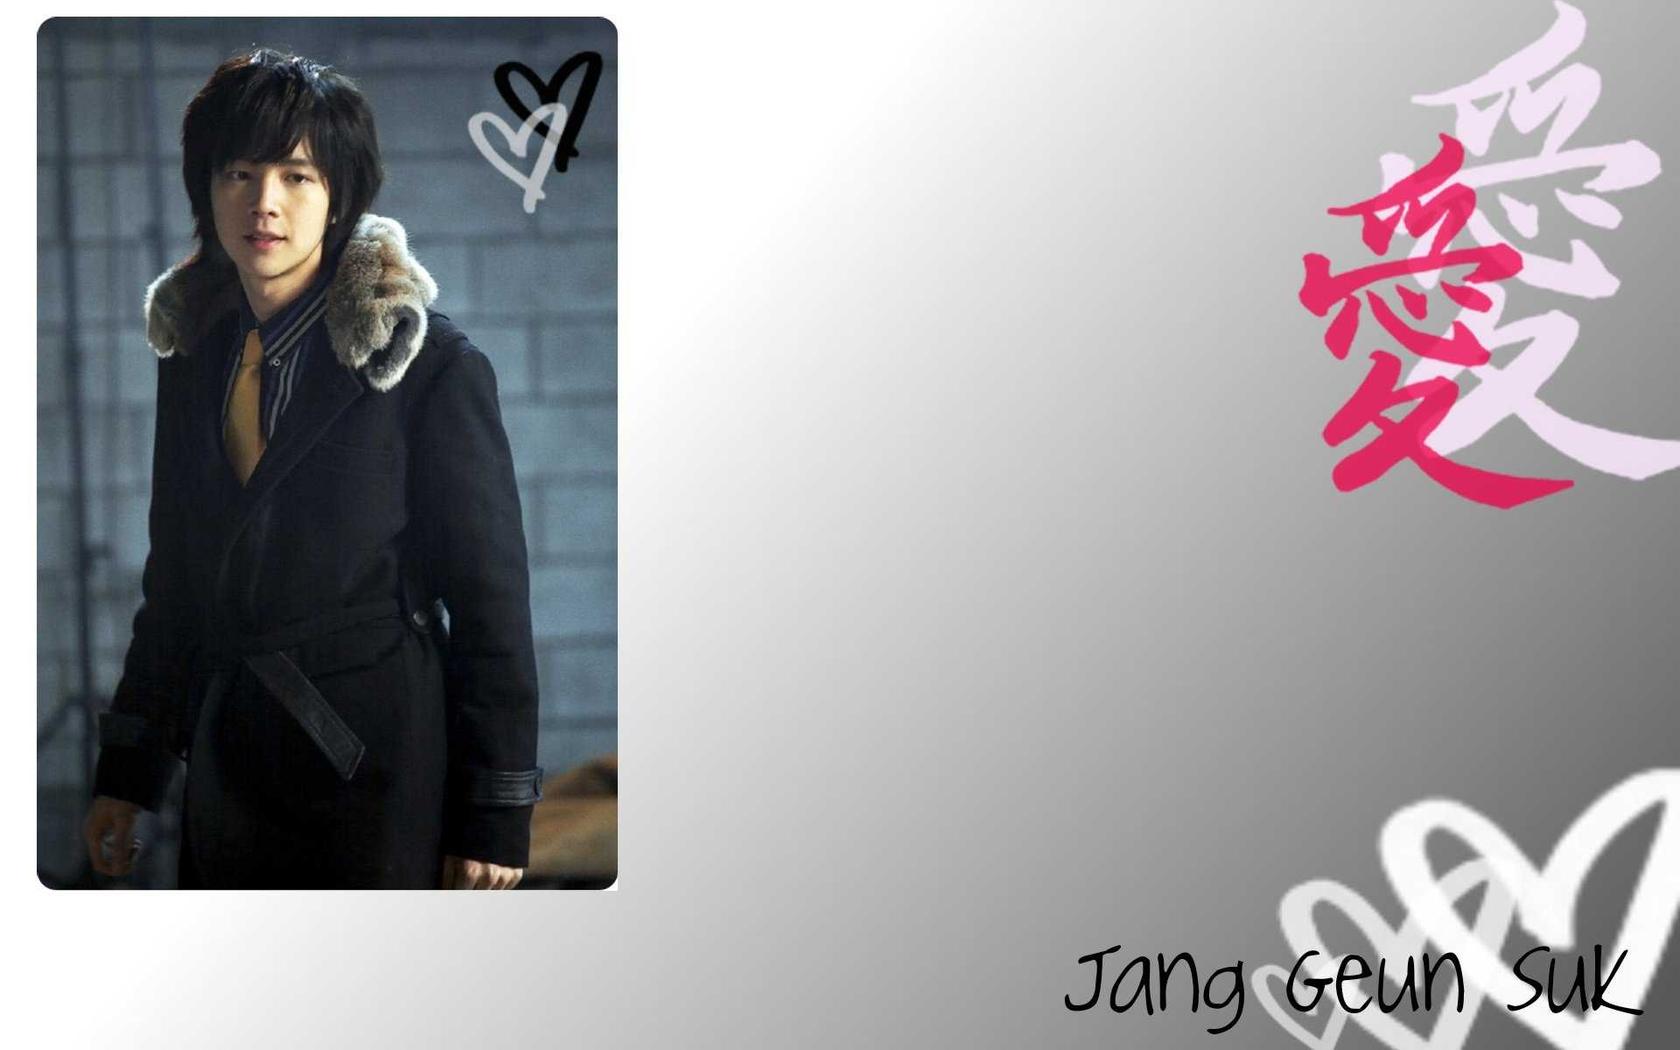 Jang Geun Suk - Picture Gallery